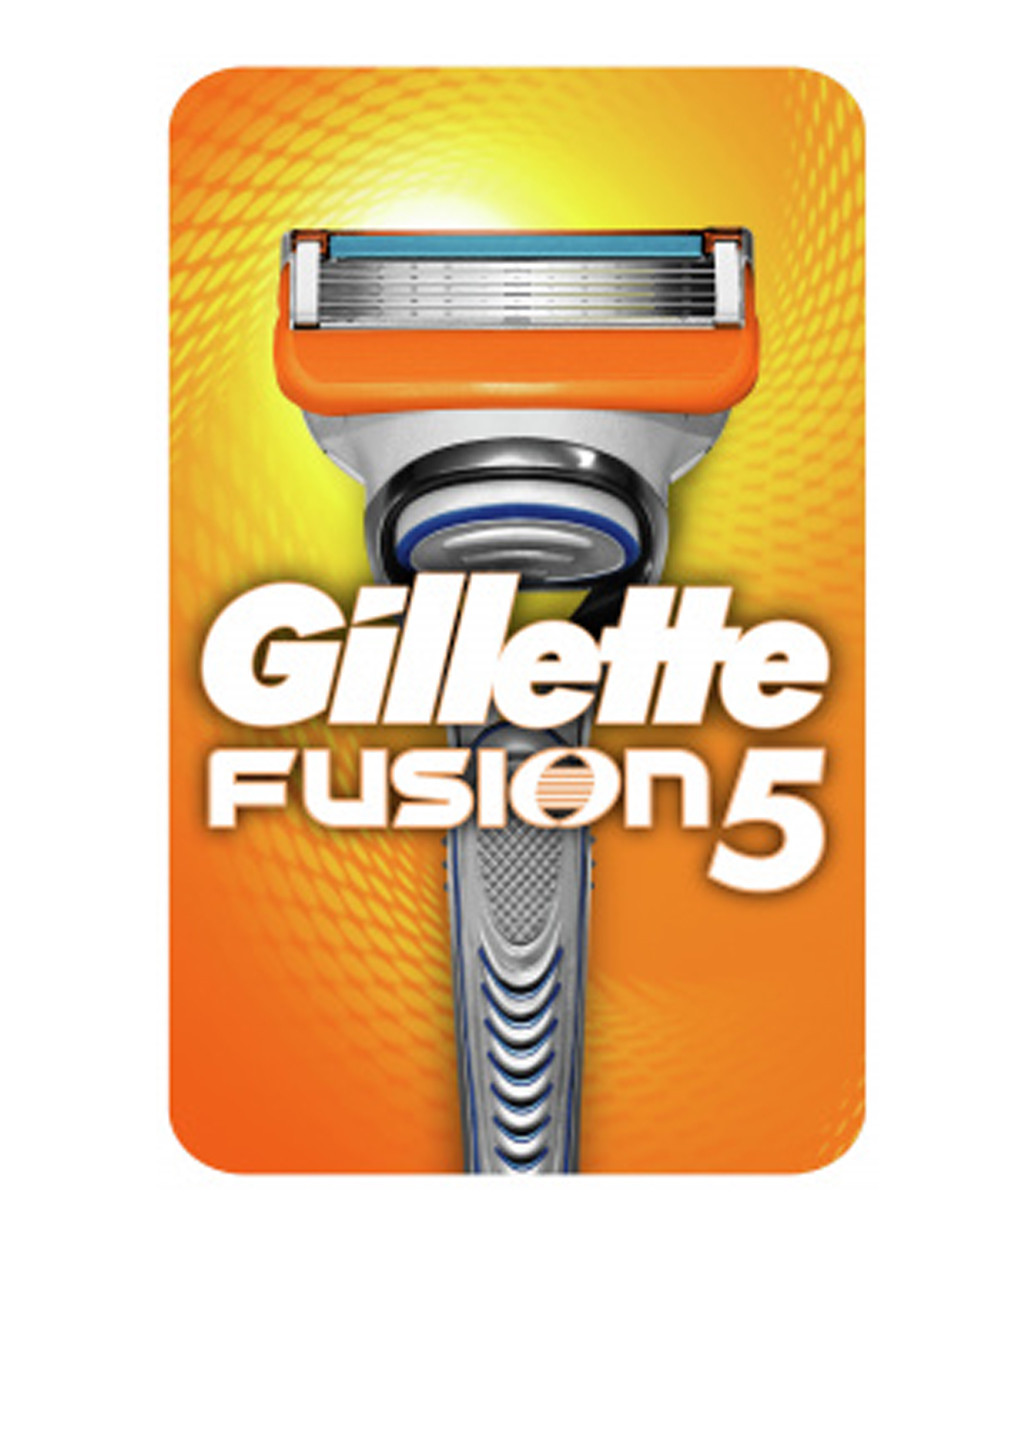 Станок-бритва Fusion5 с 1 сменным картриджем Gillette (138200672)